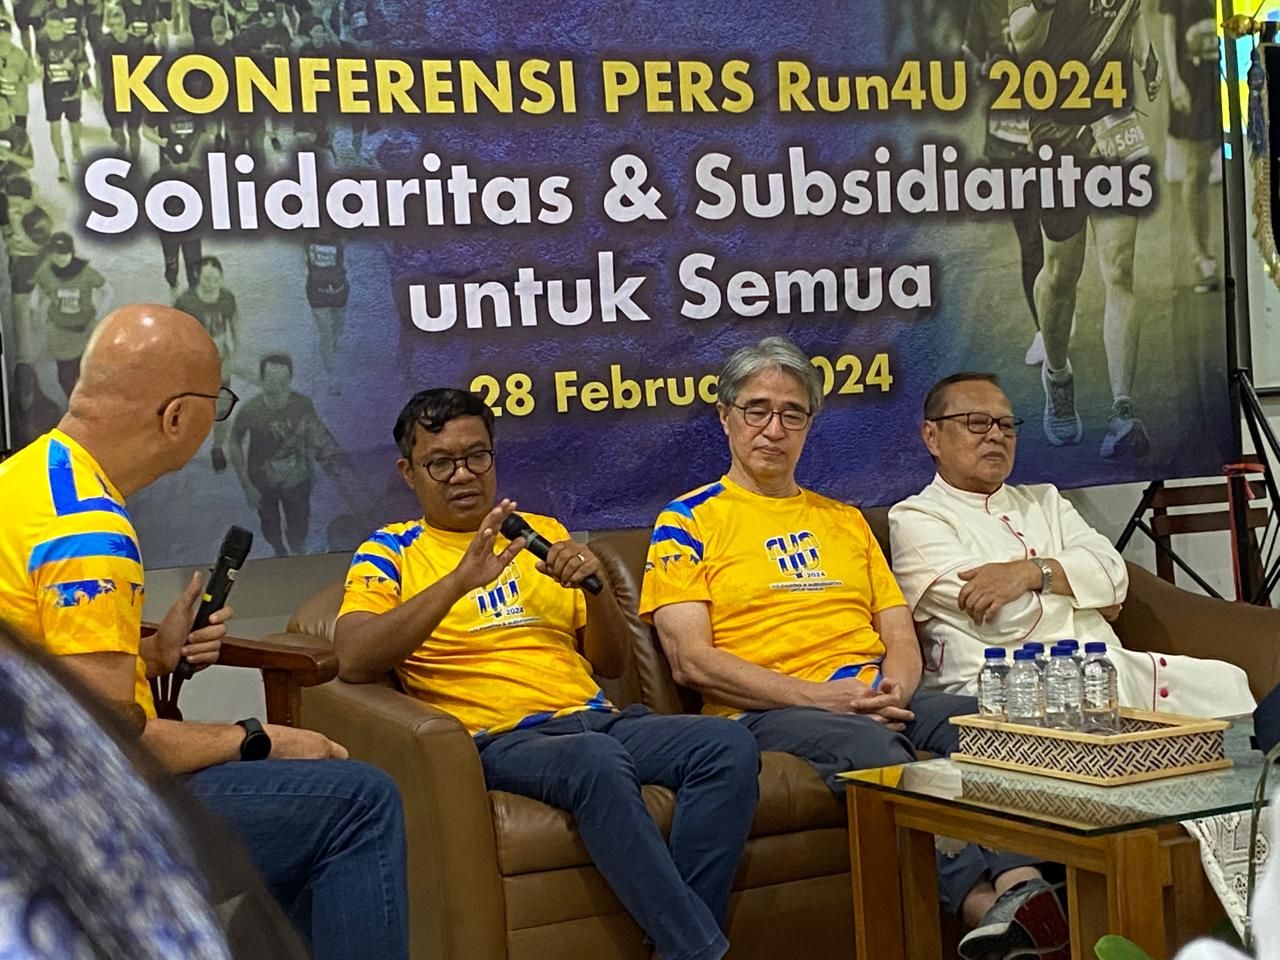 Bruder Petrus Partono PSS (ke-2 dari kiri) pada konferensi pers Run4U di Ruang Maria Yosep, Katedral, Jakarta, Rabu, 28 Februari 2024. Sumber: Lucius GK